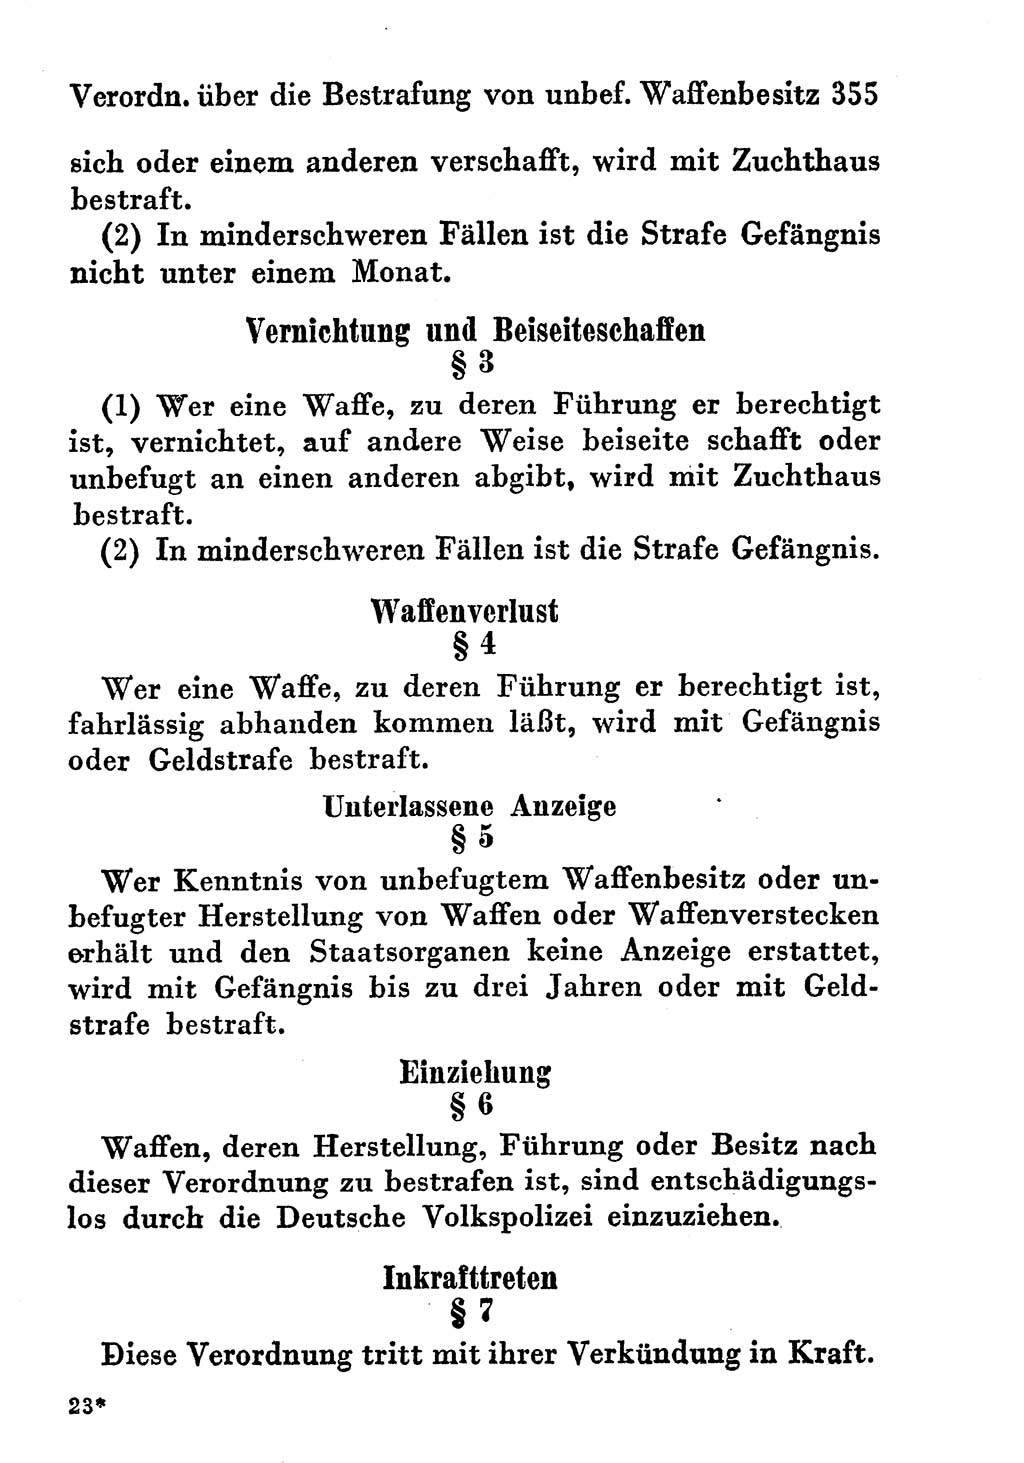 Strafgesetzbuch (StGB) und andere Strafgesetze [Deutsche Demokratische Republik (DDR)] 1956, Seite 355 (StGB Strafges. DDR 1956, S. 355)